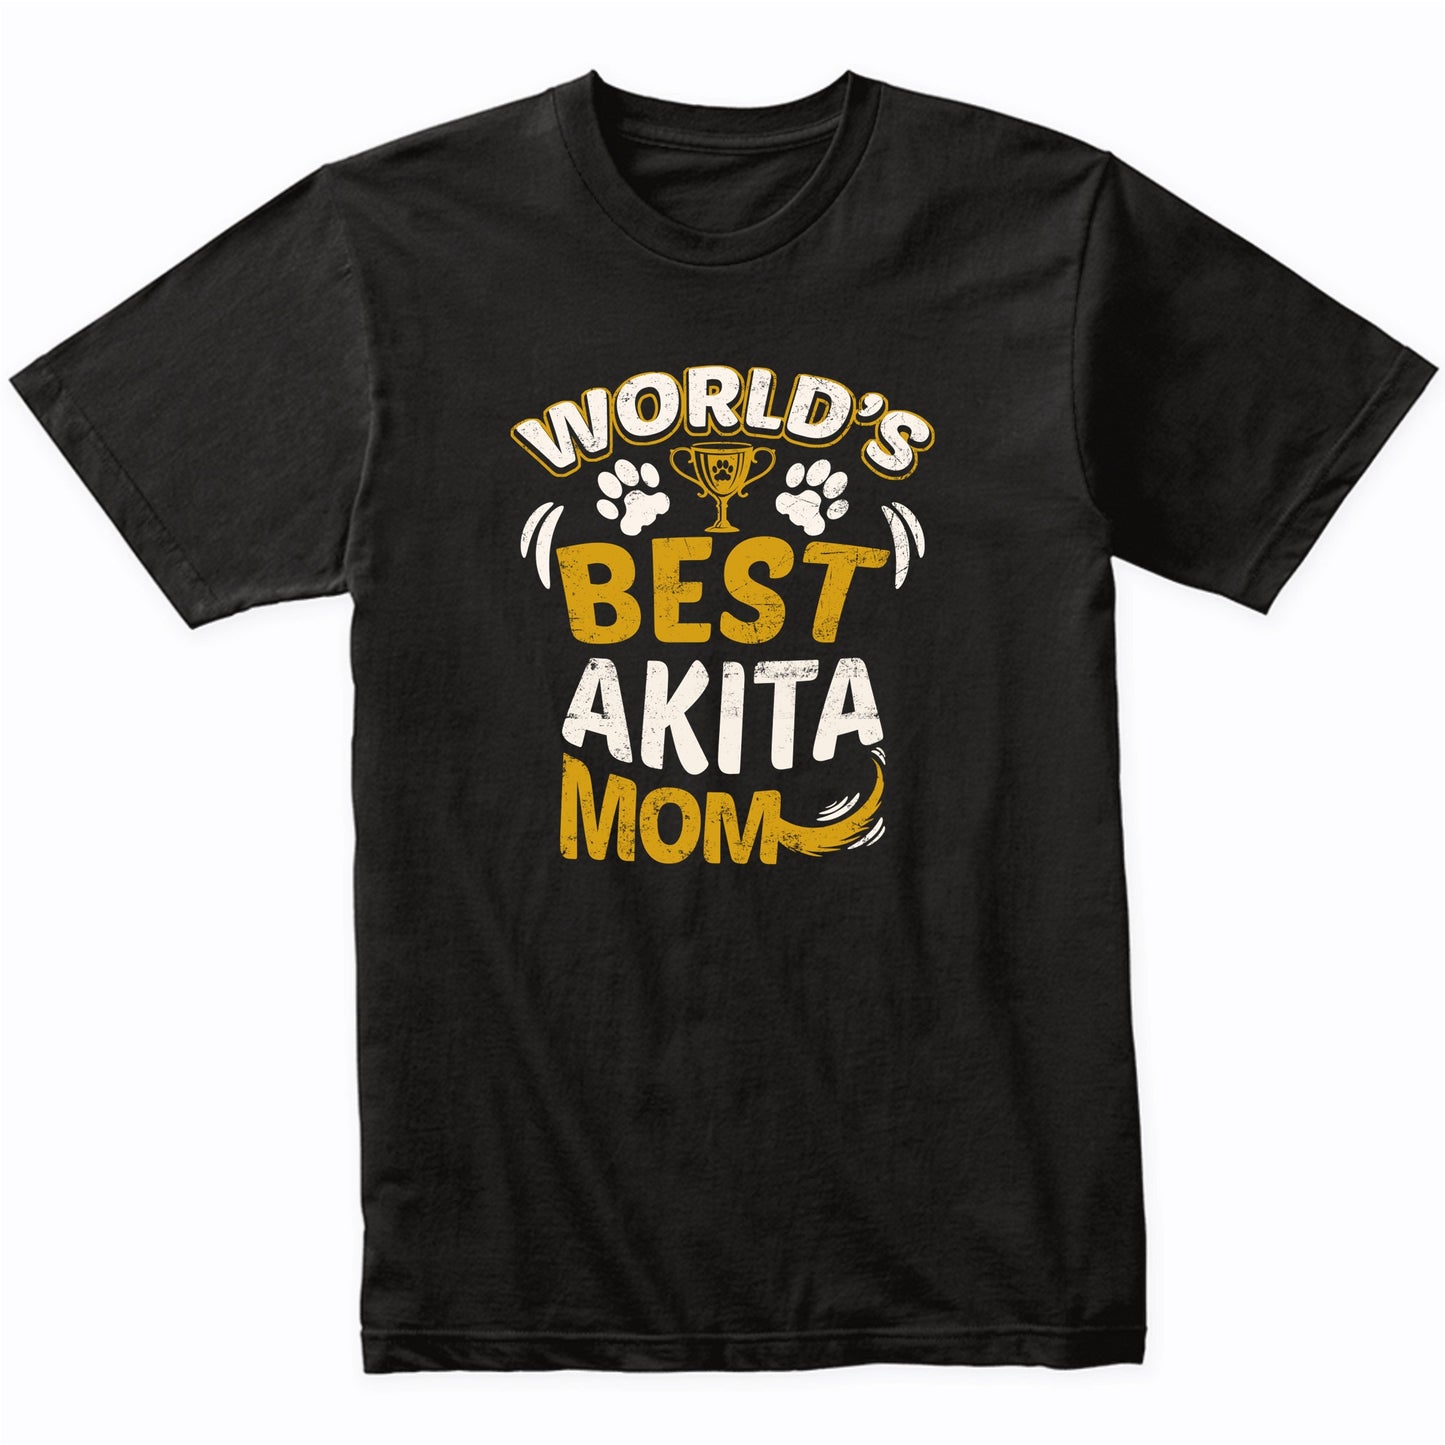 World's Best Akita Mom Graphic T-Shirt